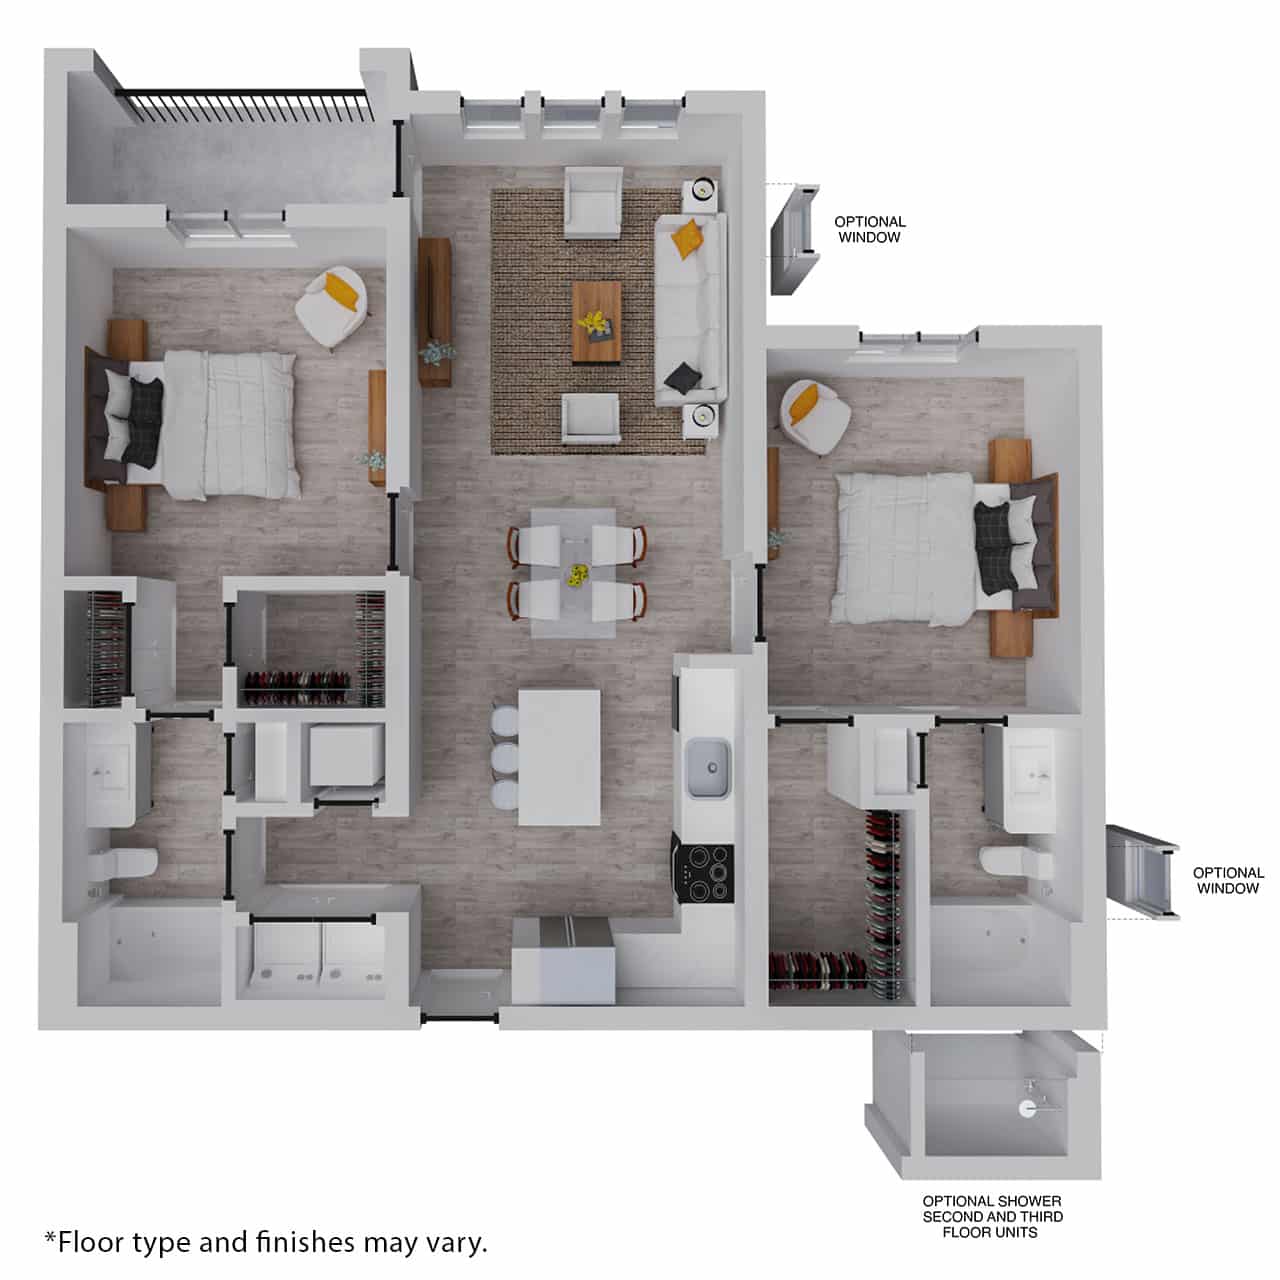 Bonita floor plan - 2 bedrooms, 2 bath, 1079sf